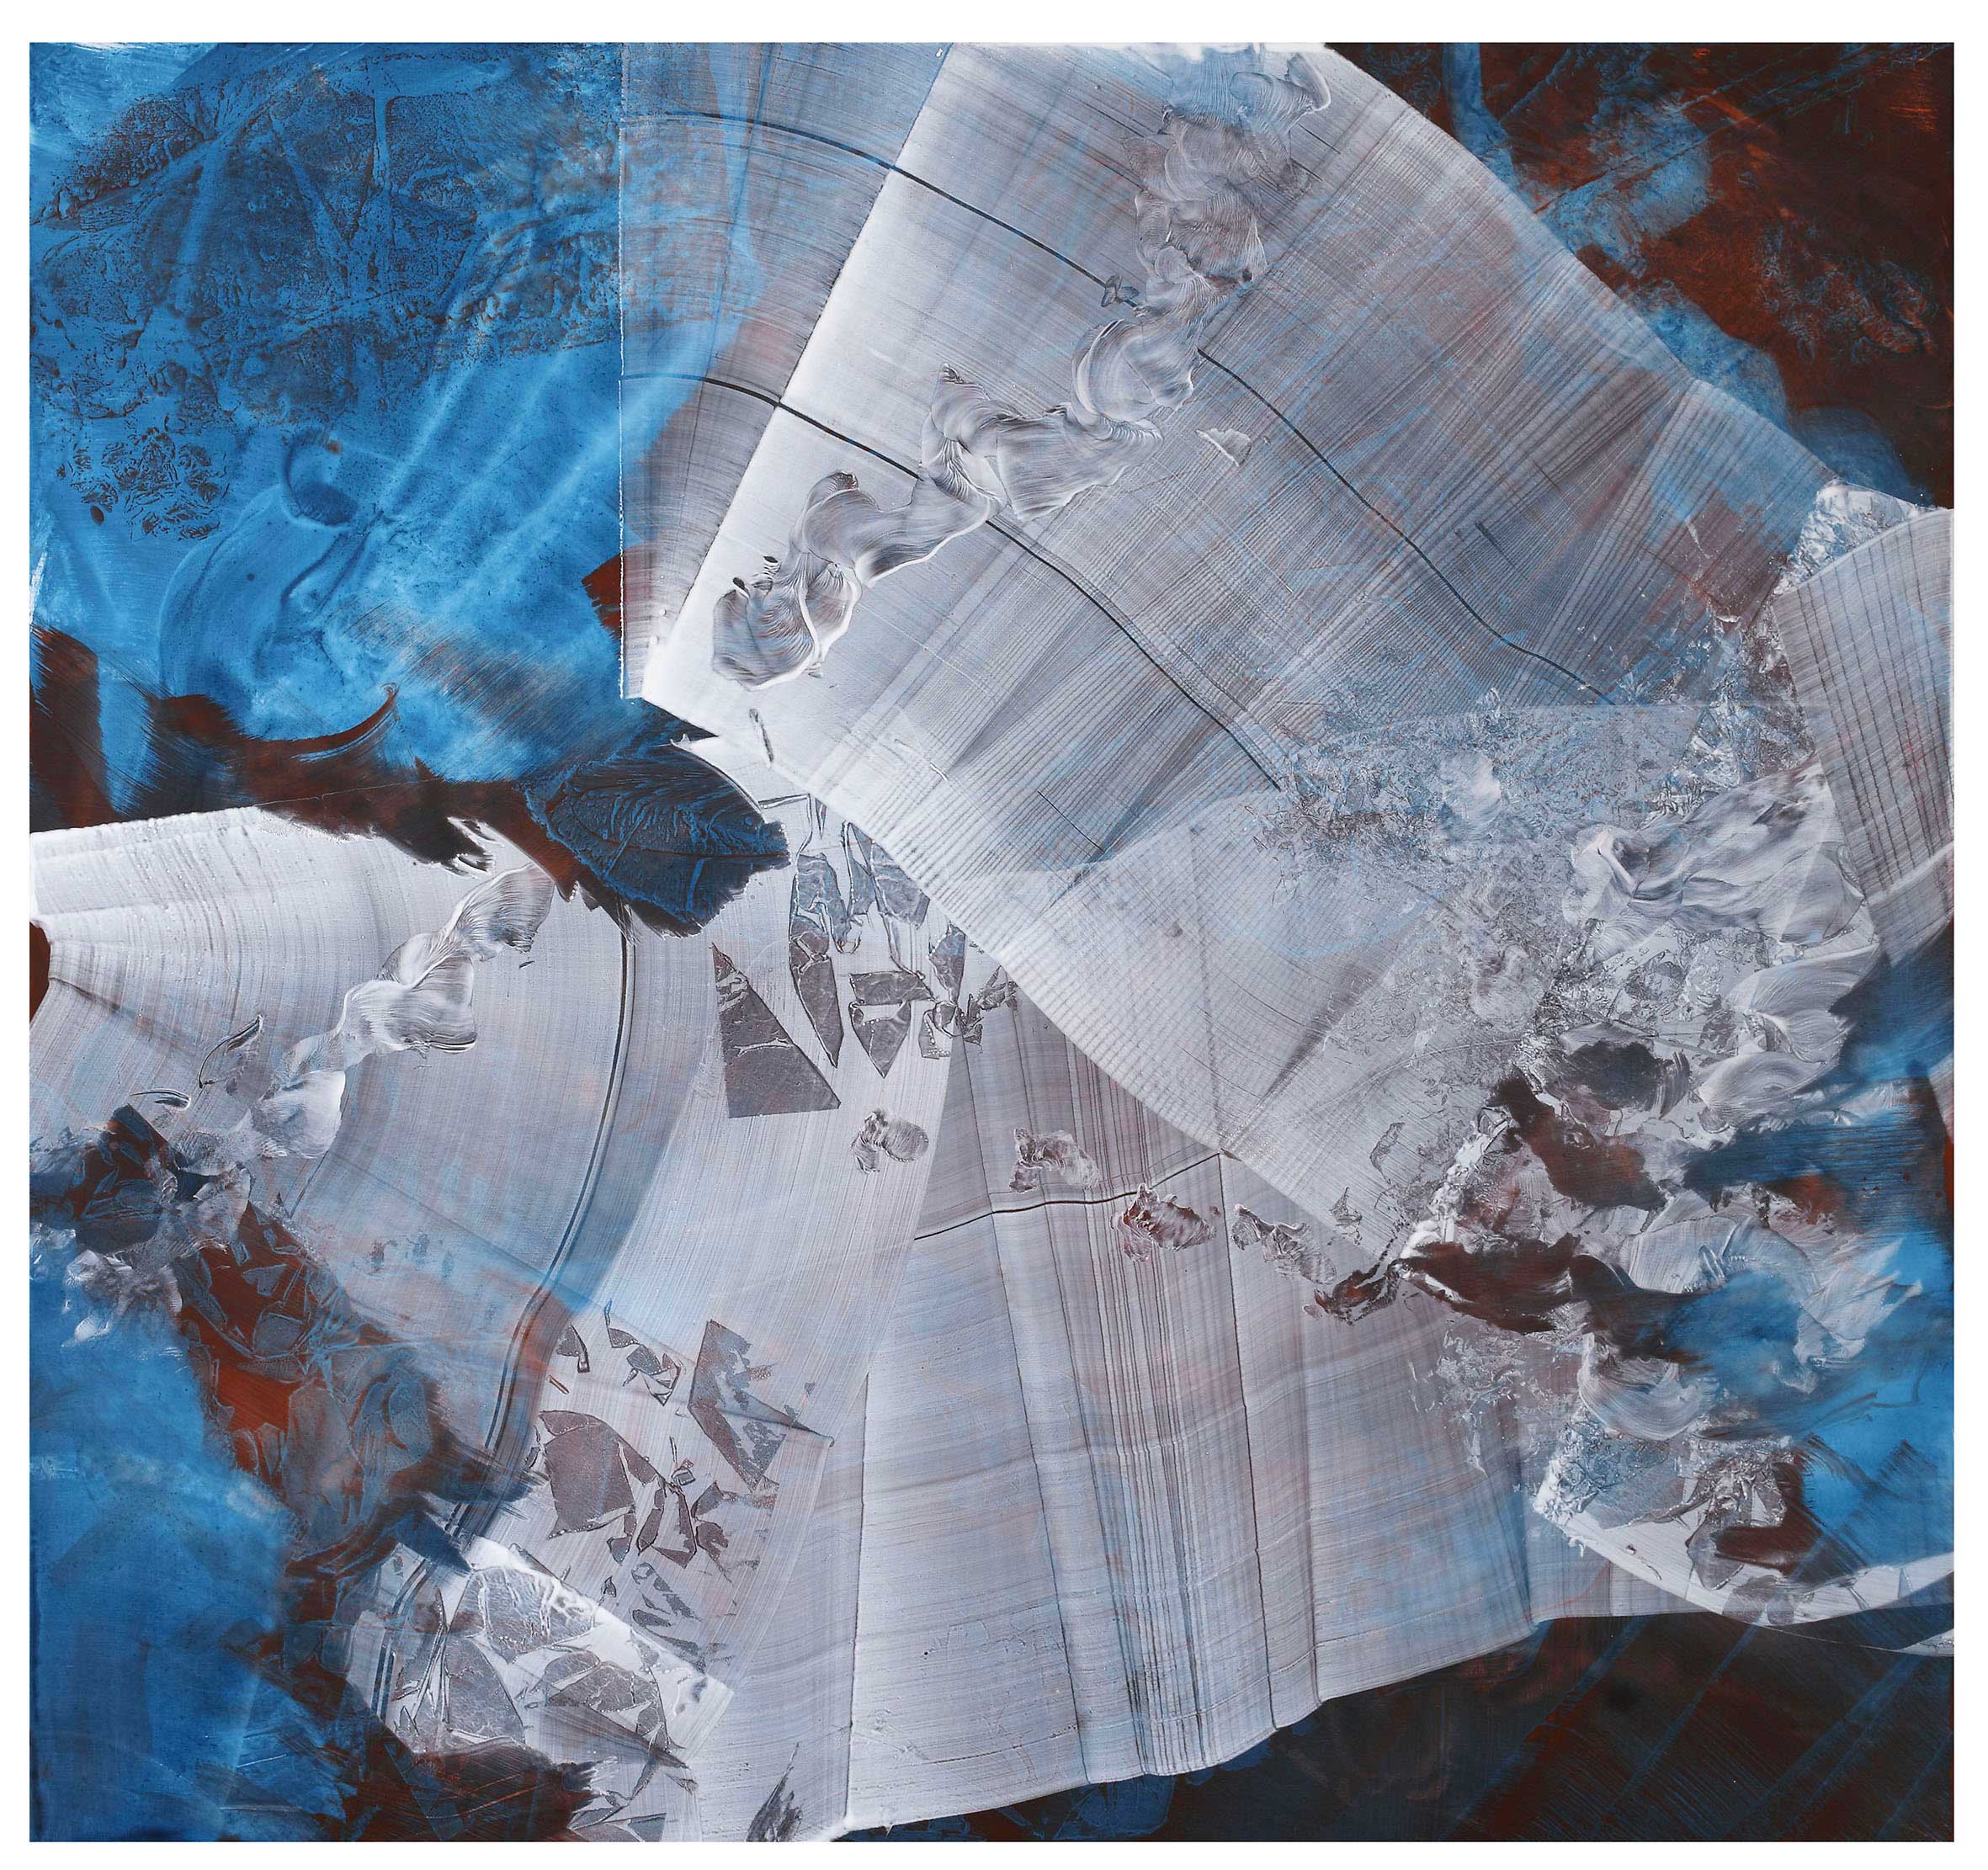 Dell'azzurro silenzio, omaggio a Luigi Nono *1,  china ink and pigments on canvas, cm 140x150, 2020